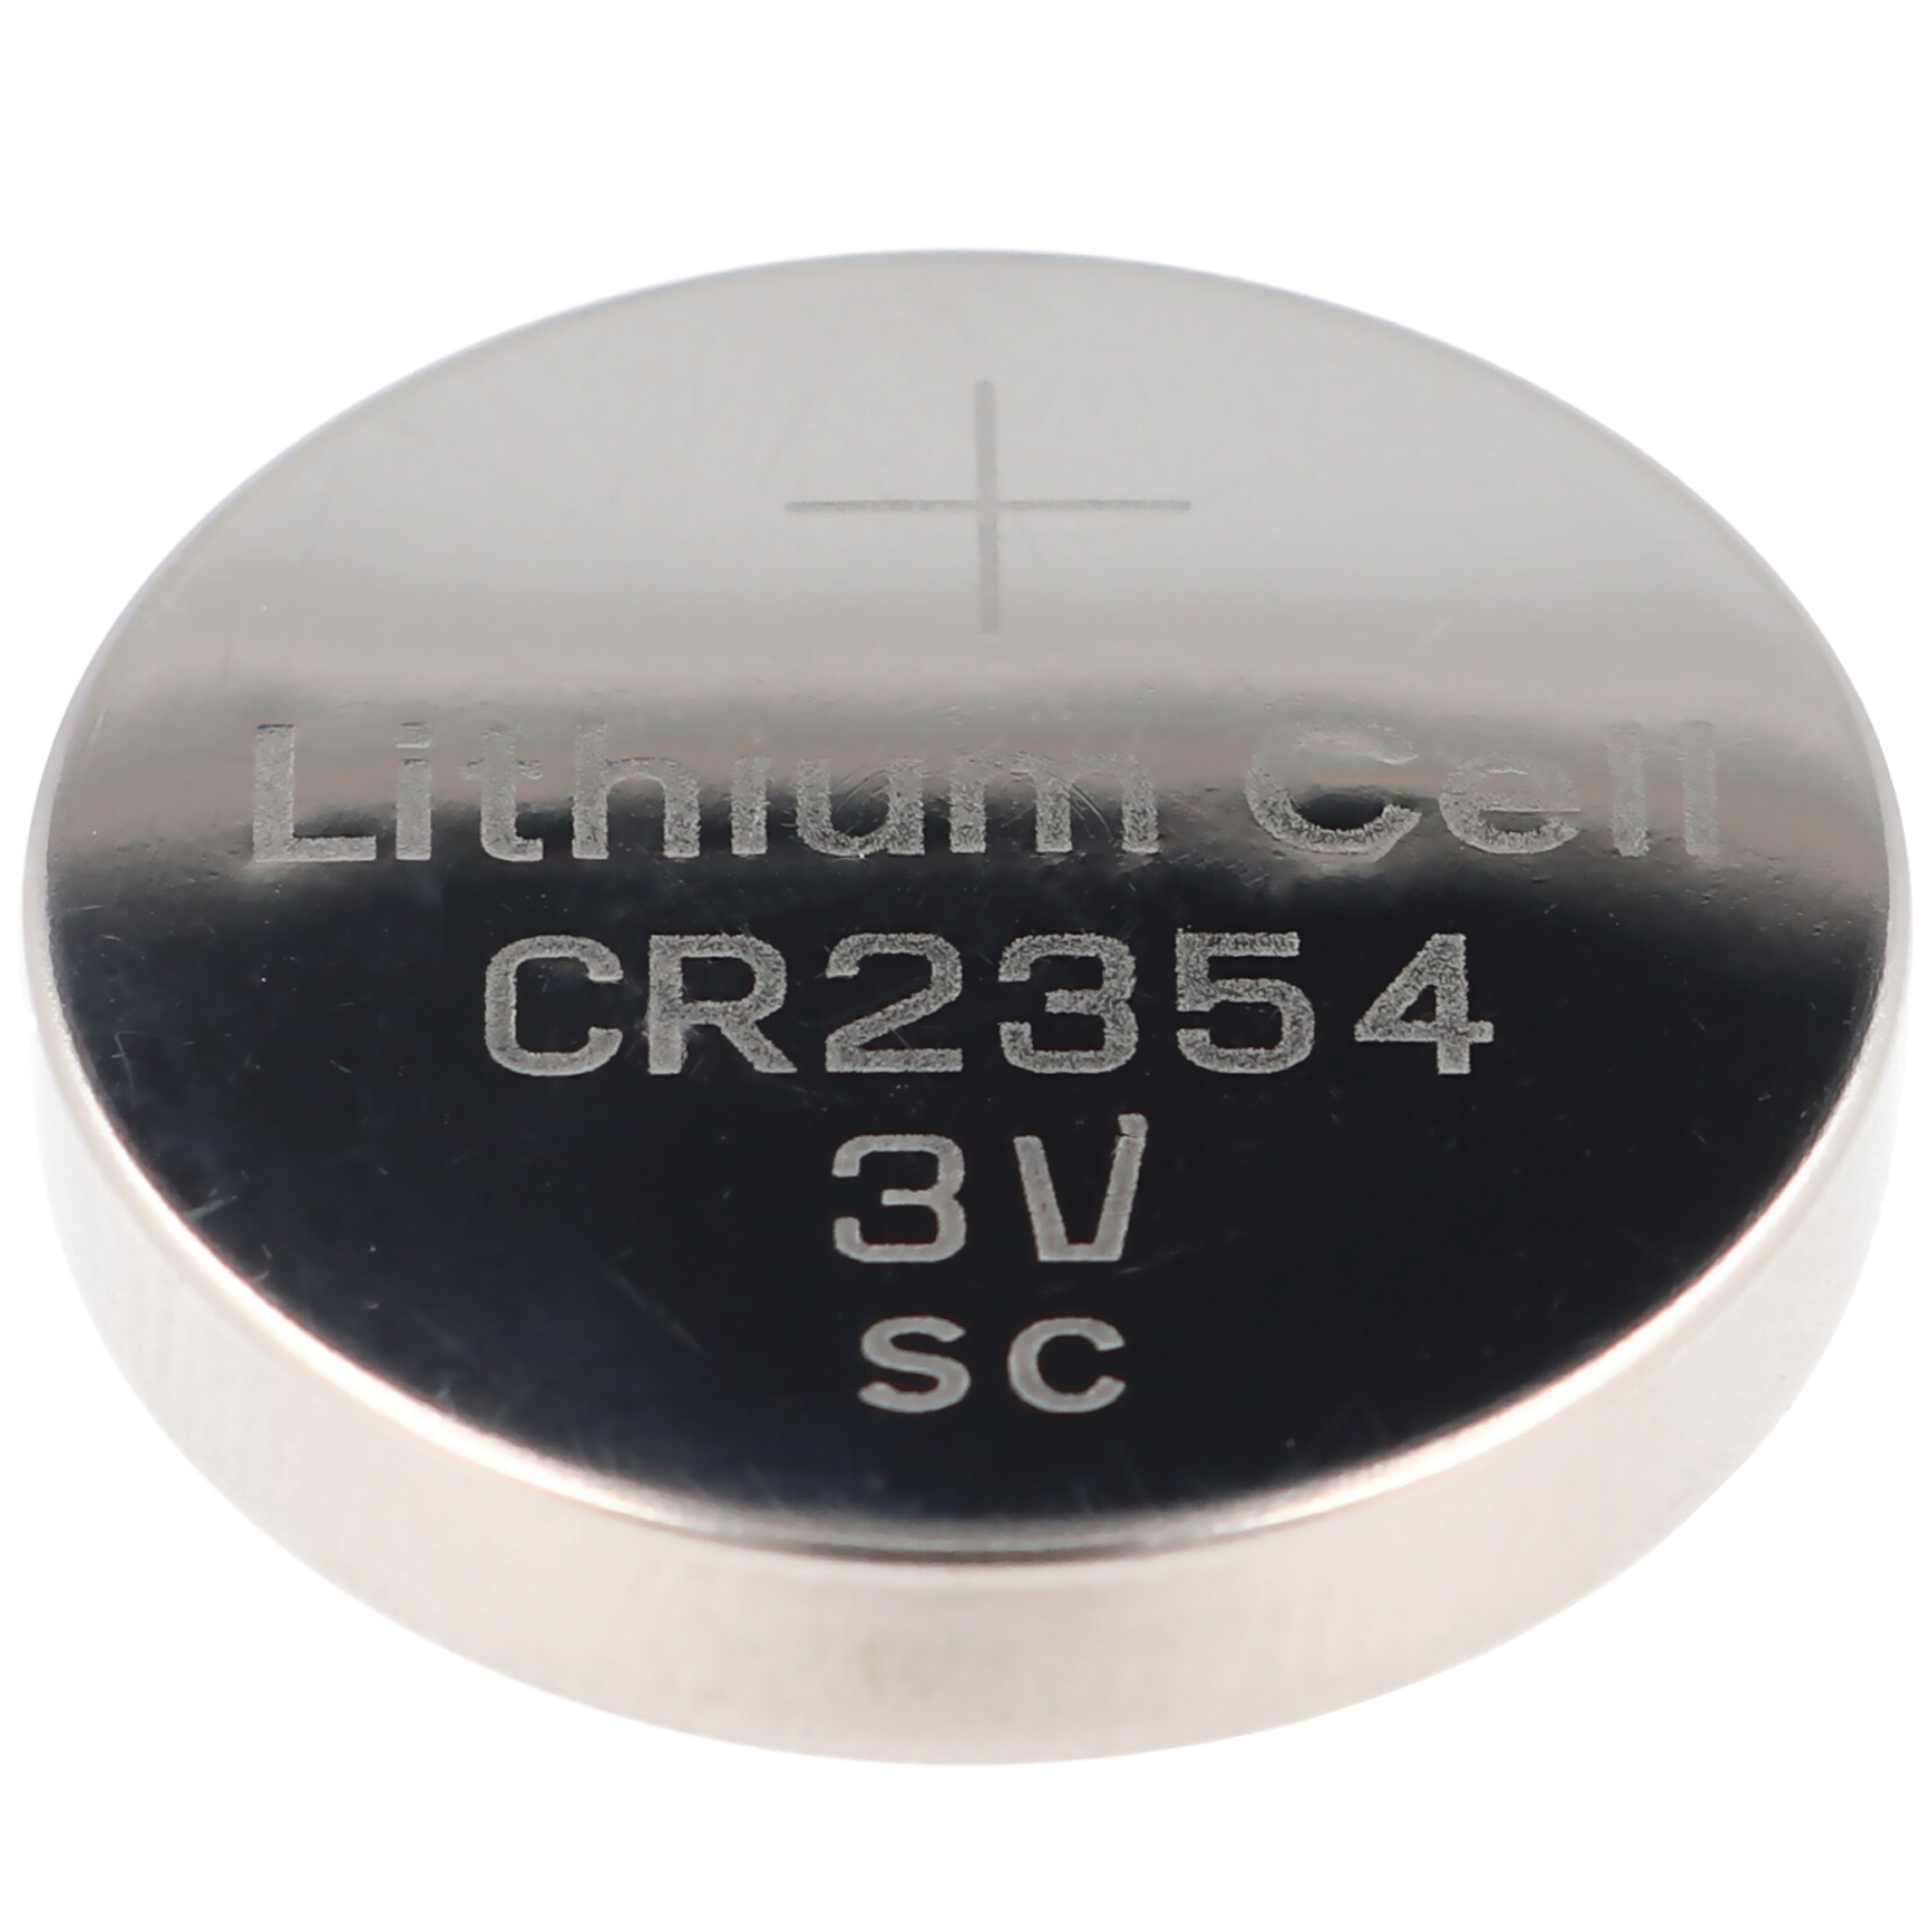 CR2354 Lithium Knopfzelle 560mAh IEC CR2354 ohne Einbuchtung an der schmalen Seite beachten